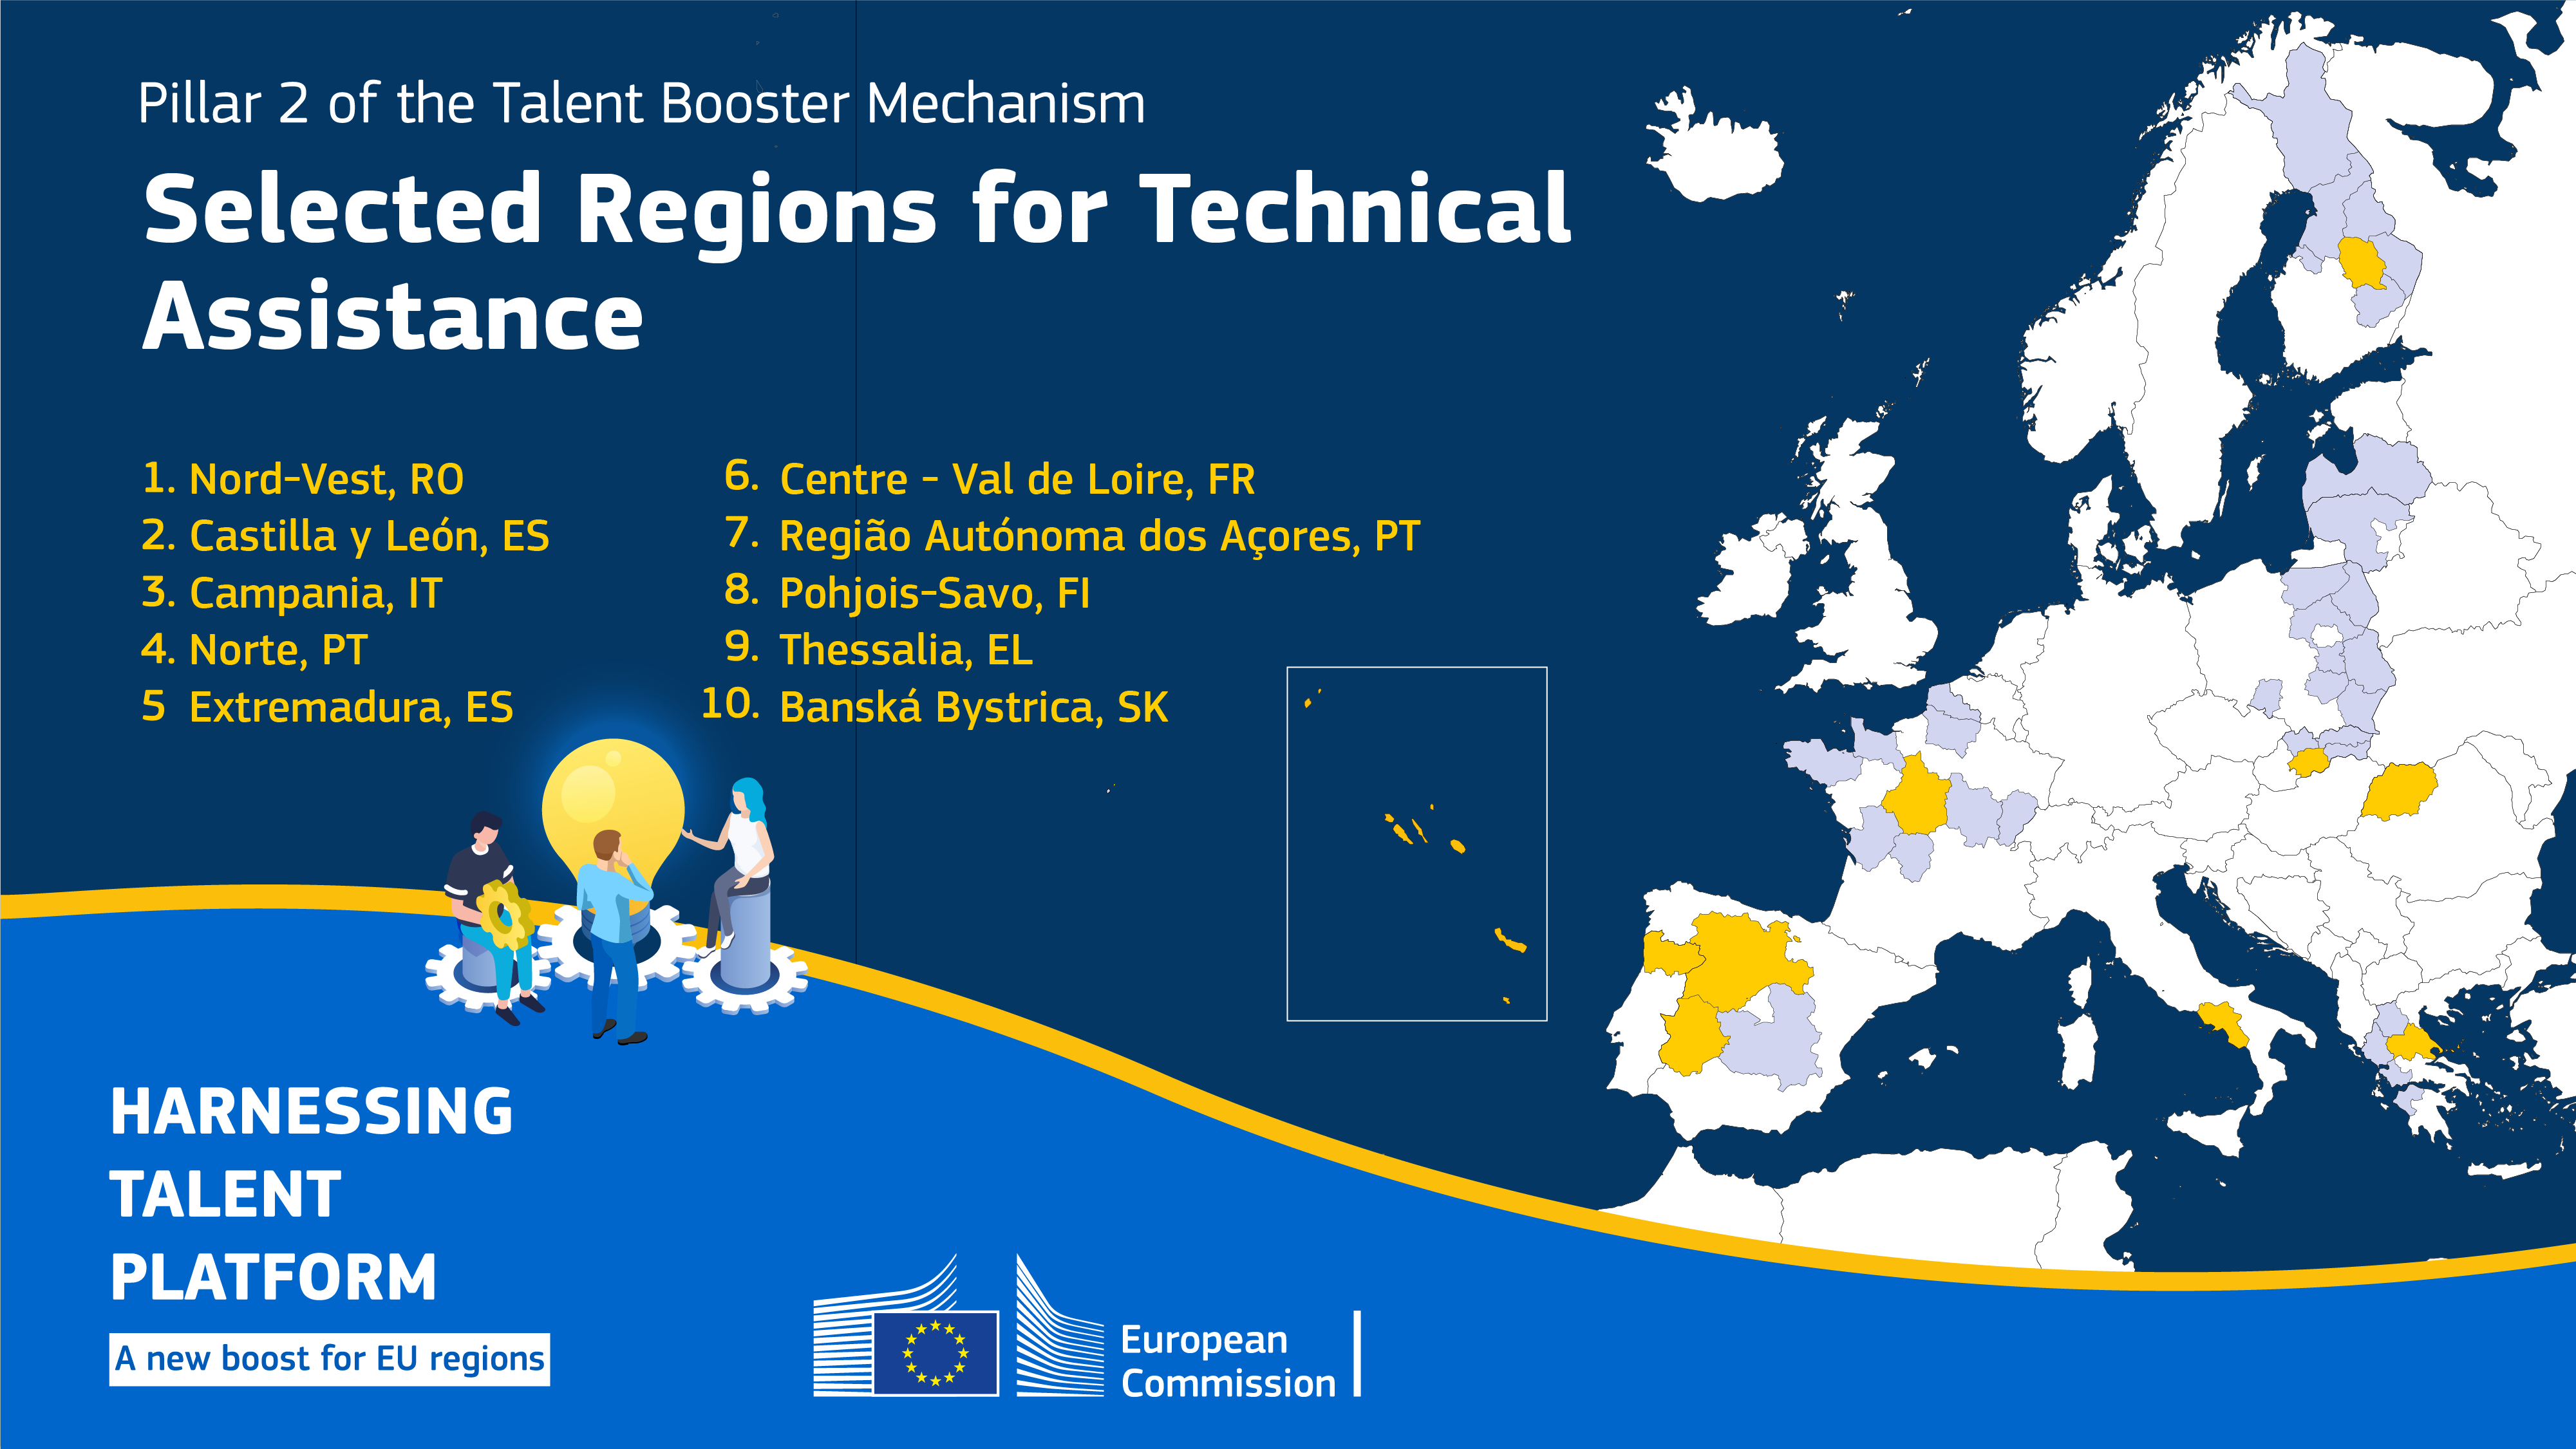 Diez regiones de la UE seleccionadas como parte del Pilar 2 del Mecanismo de Impulso del Talento para ayudar a aliviar los efectos del cambio demográfico